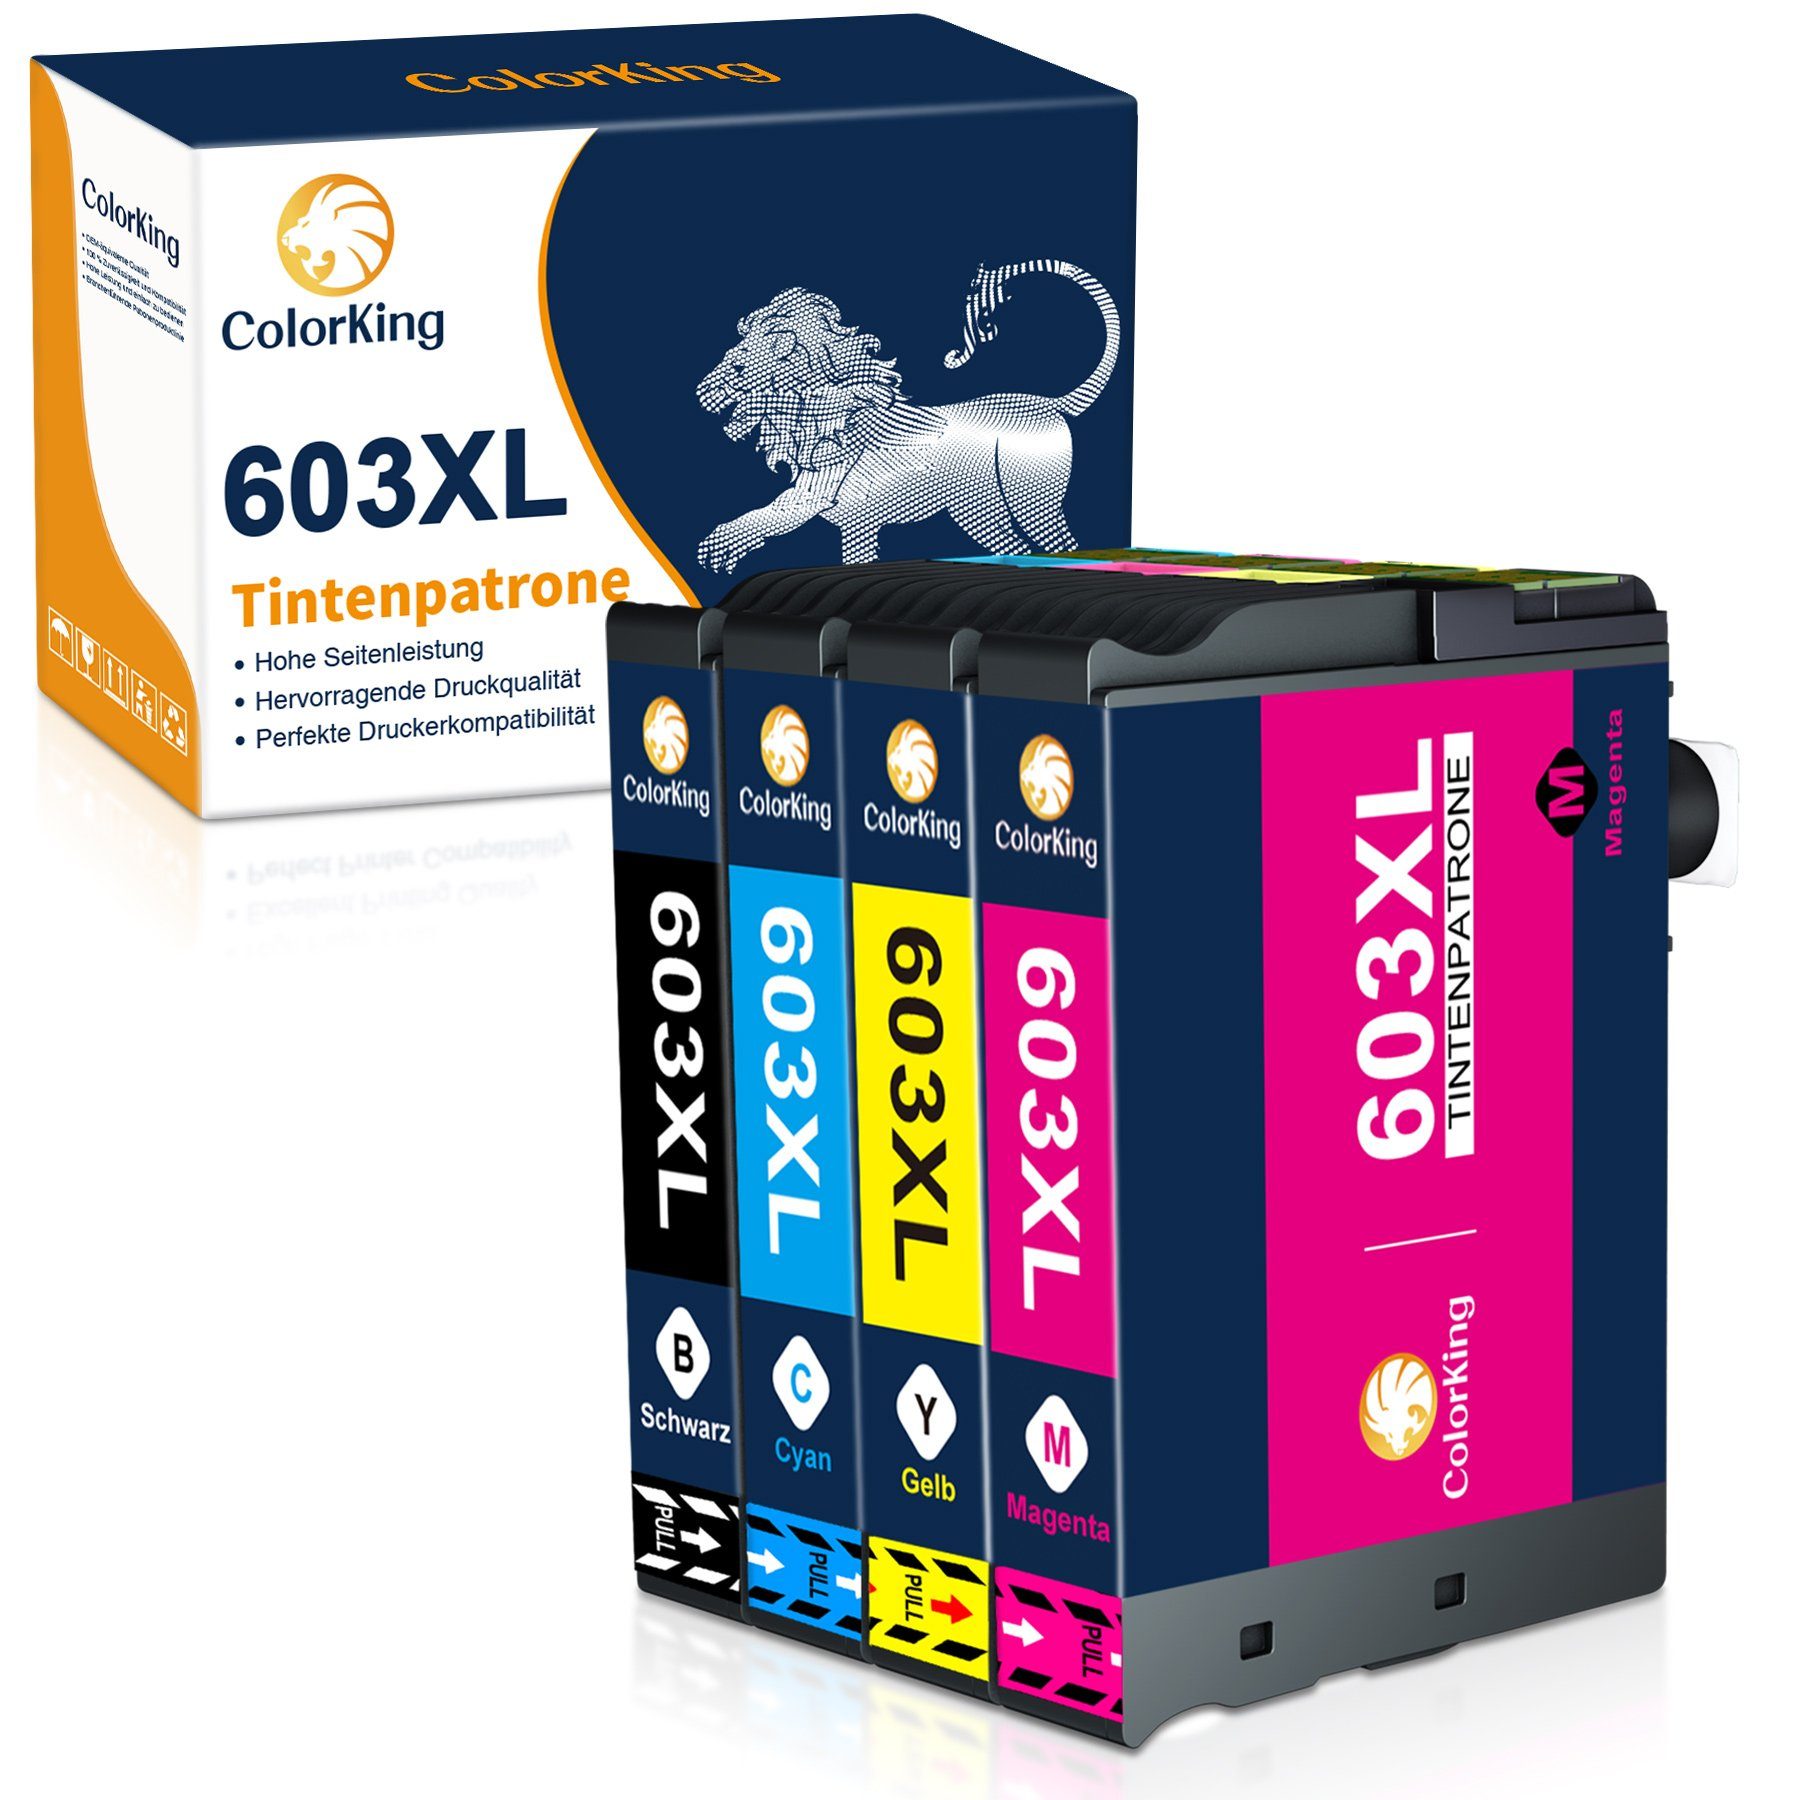 ColorKing 603XL multipack Tintenpatrone (Ersatz für Workforce WF-2835 2850 2830 2810) 1* Schwarz, 1* Cyan, 1* Magenta, 1* Gelb (4er Set)